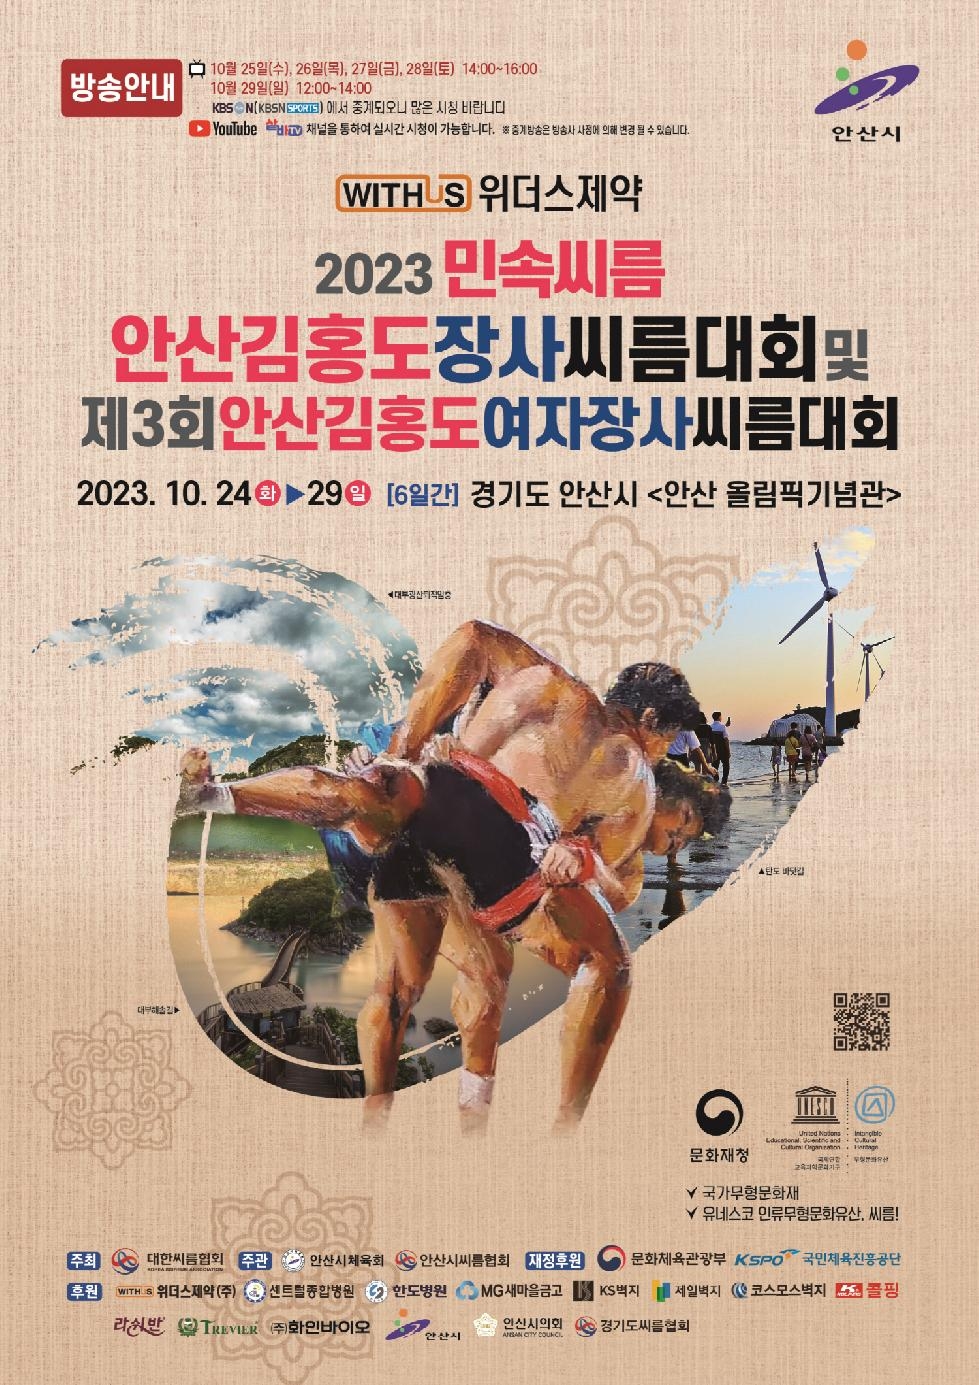 2023 안산 김홍도 장사씨름대회, 24일부터 6일간 올림픽체육관서 열전